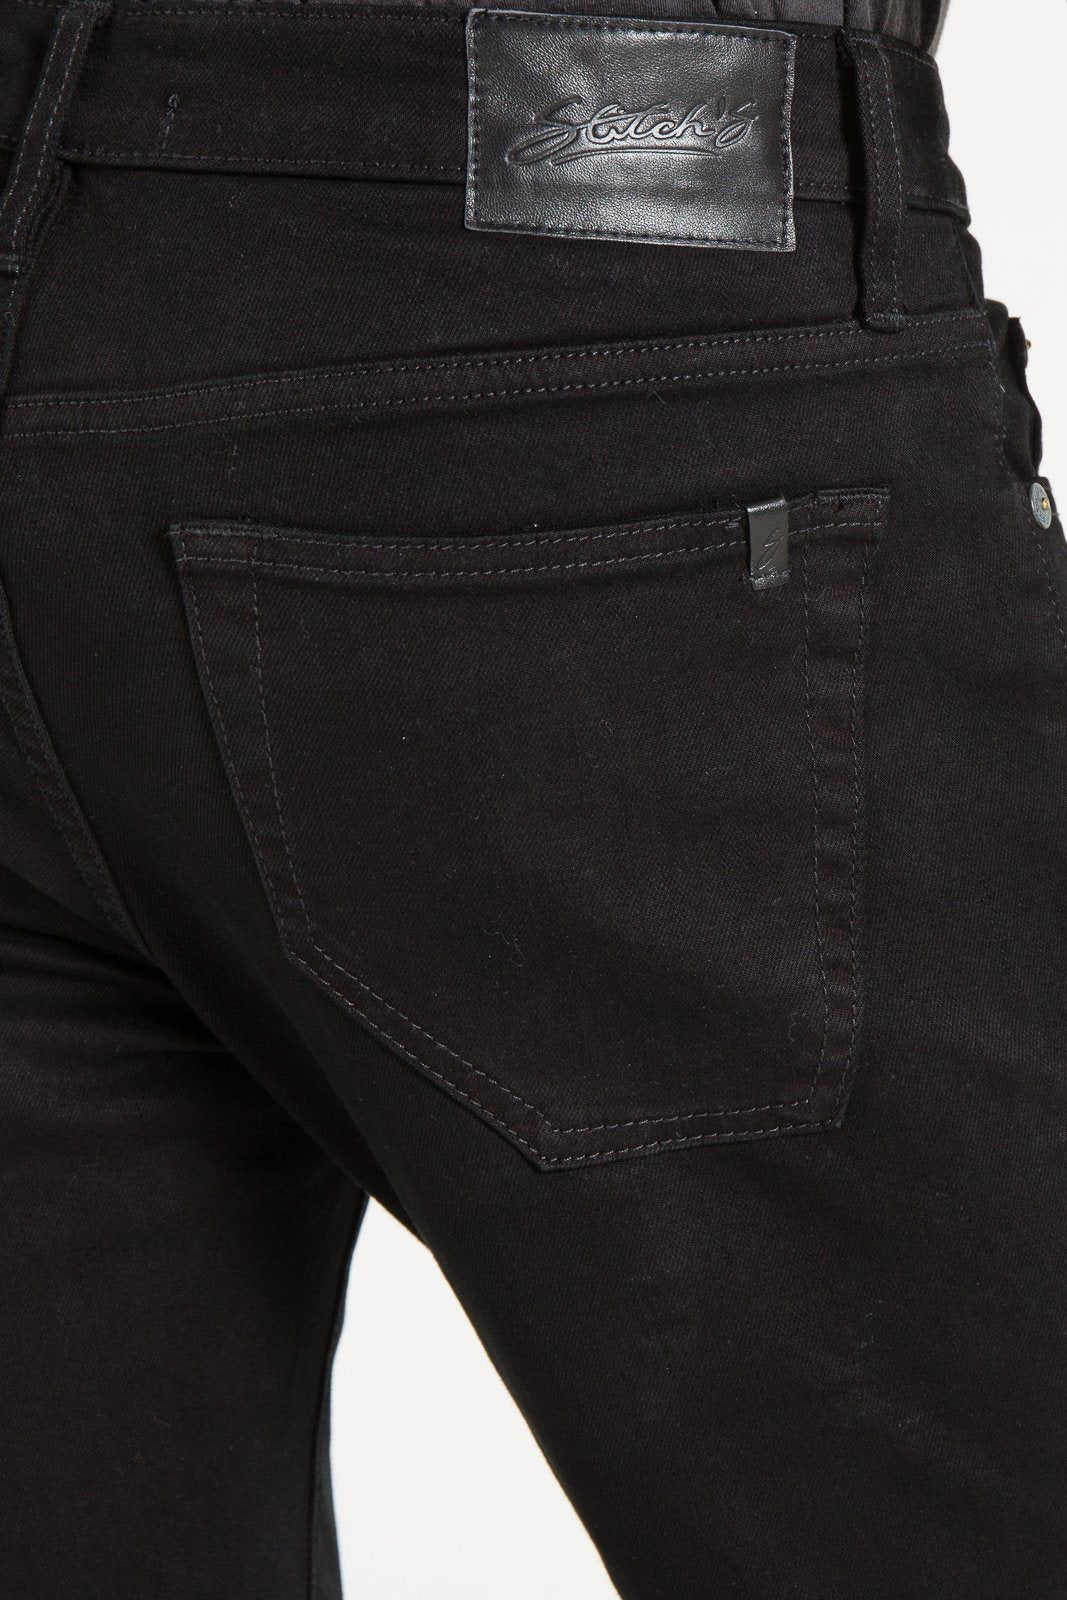 BARFLY SLIM IN MERINO CORDUROY JEANS | STITCHS JEANS - Stitch's Jeans